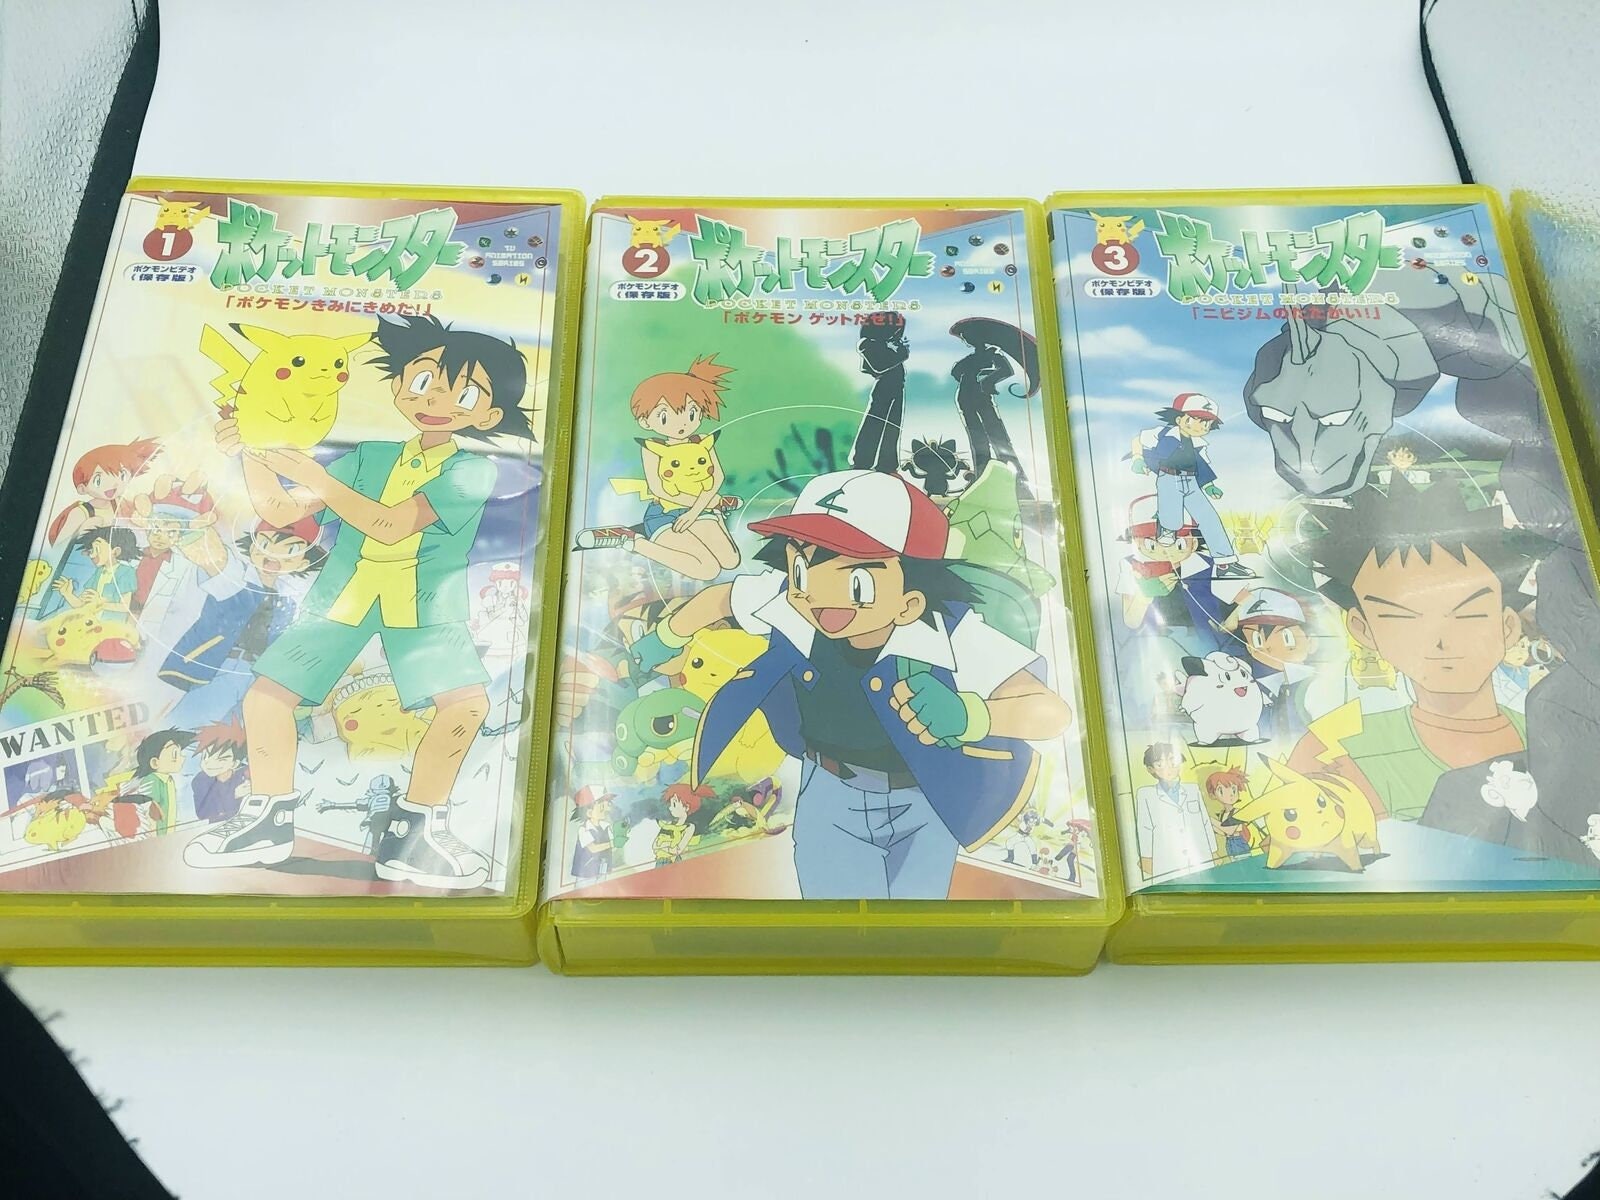 Pocket Monster Revelation Lugia VHS Video Japan Anime Pokemon